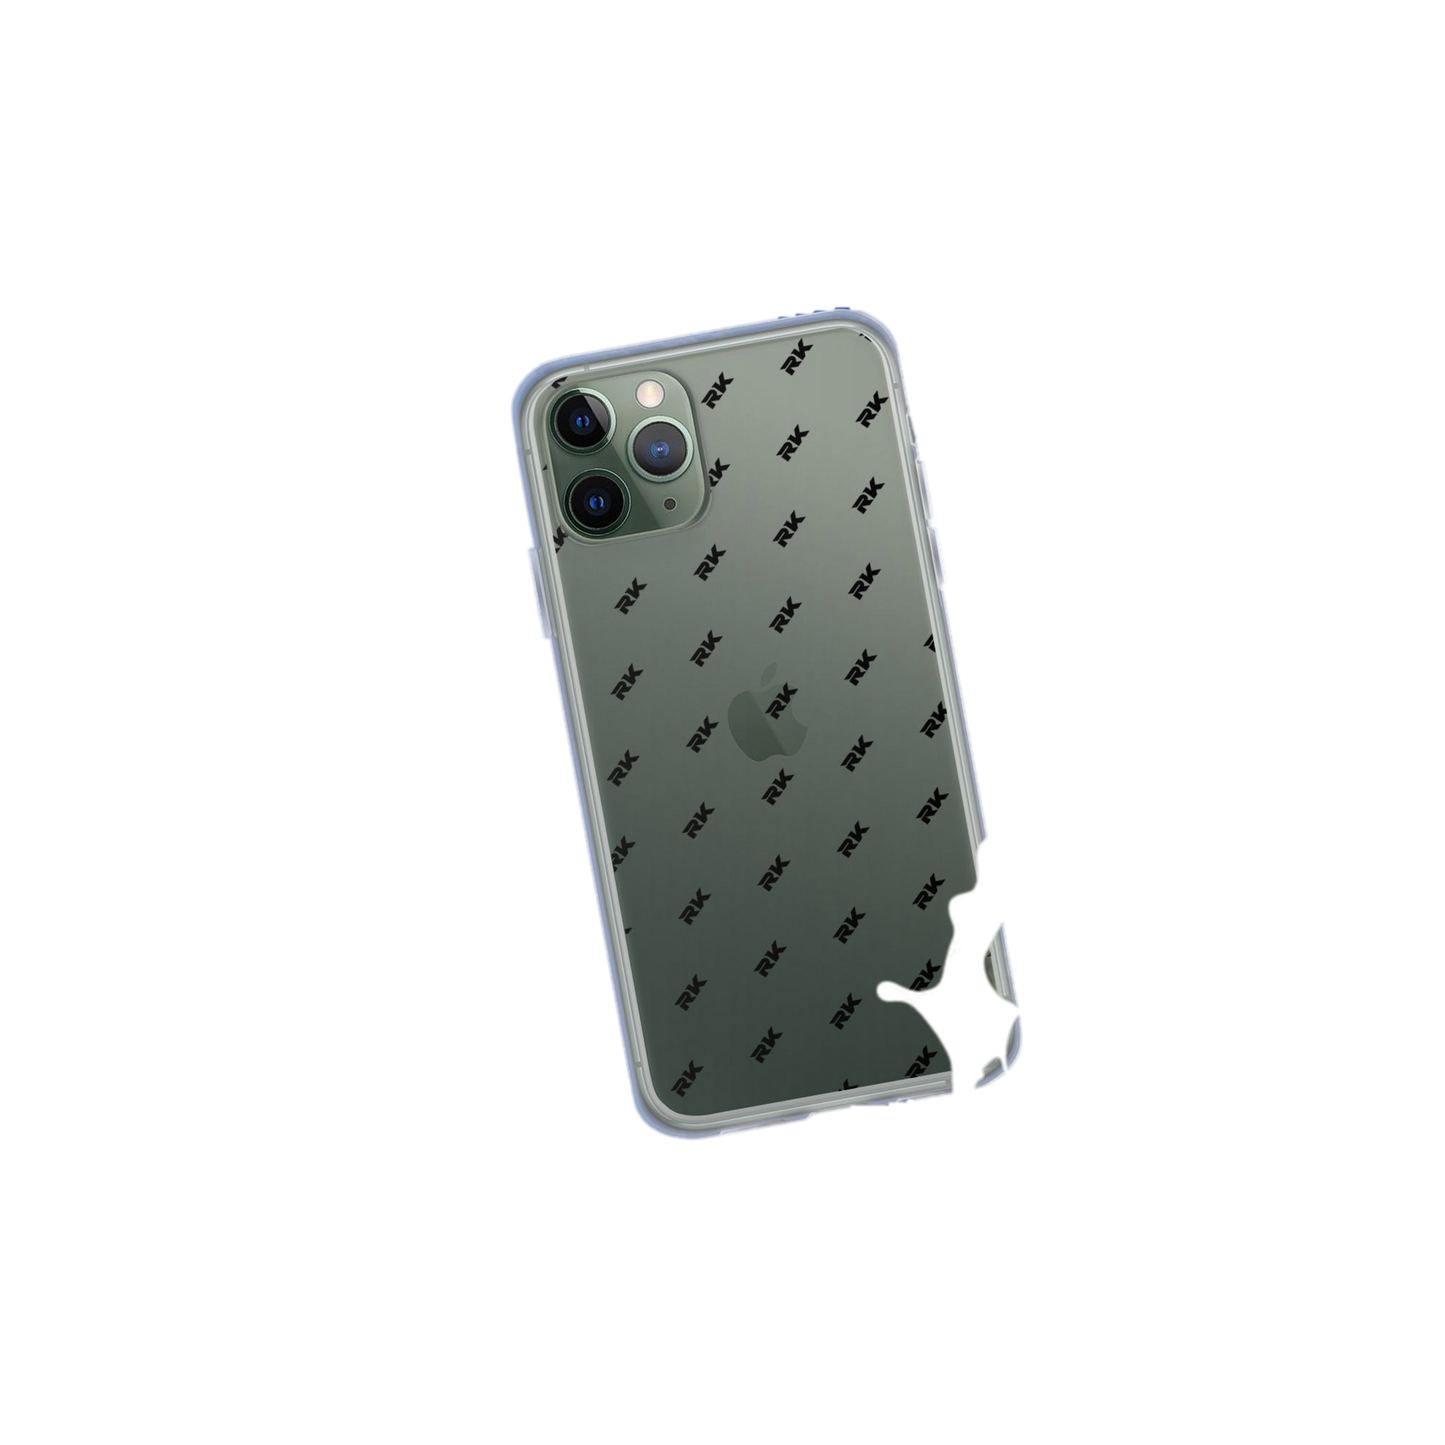 RK Iphone case